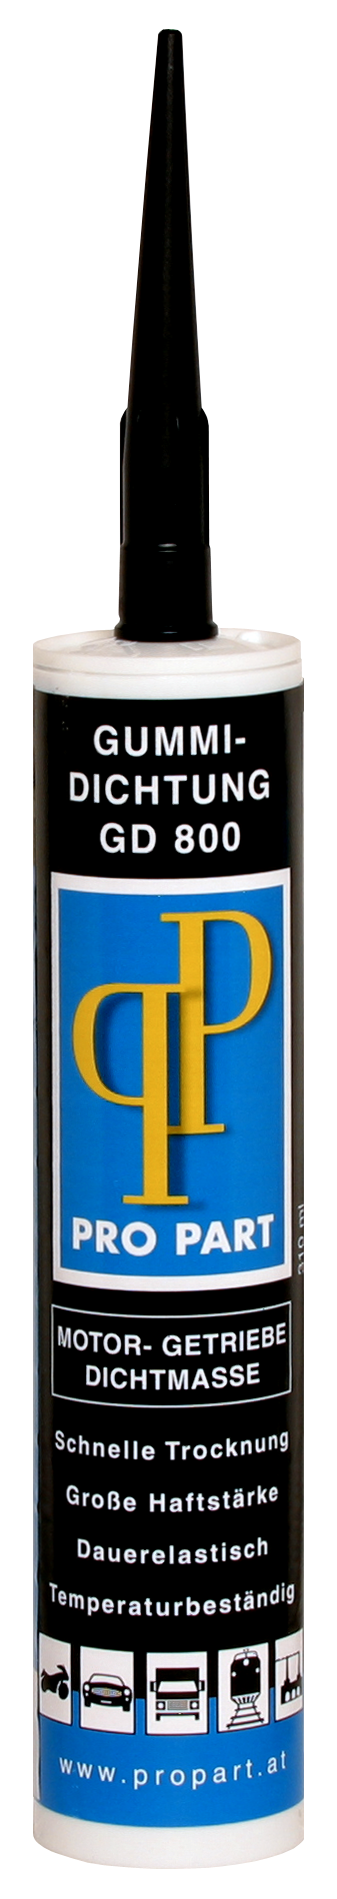 Gummi Dichtung GD 800   310 ml